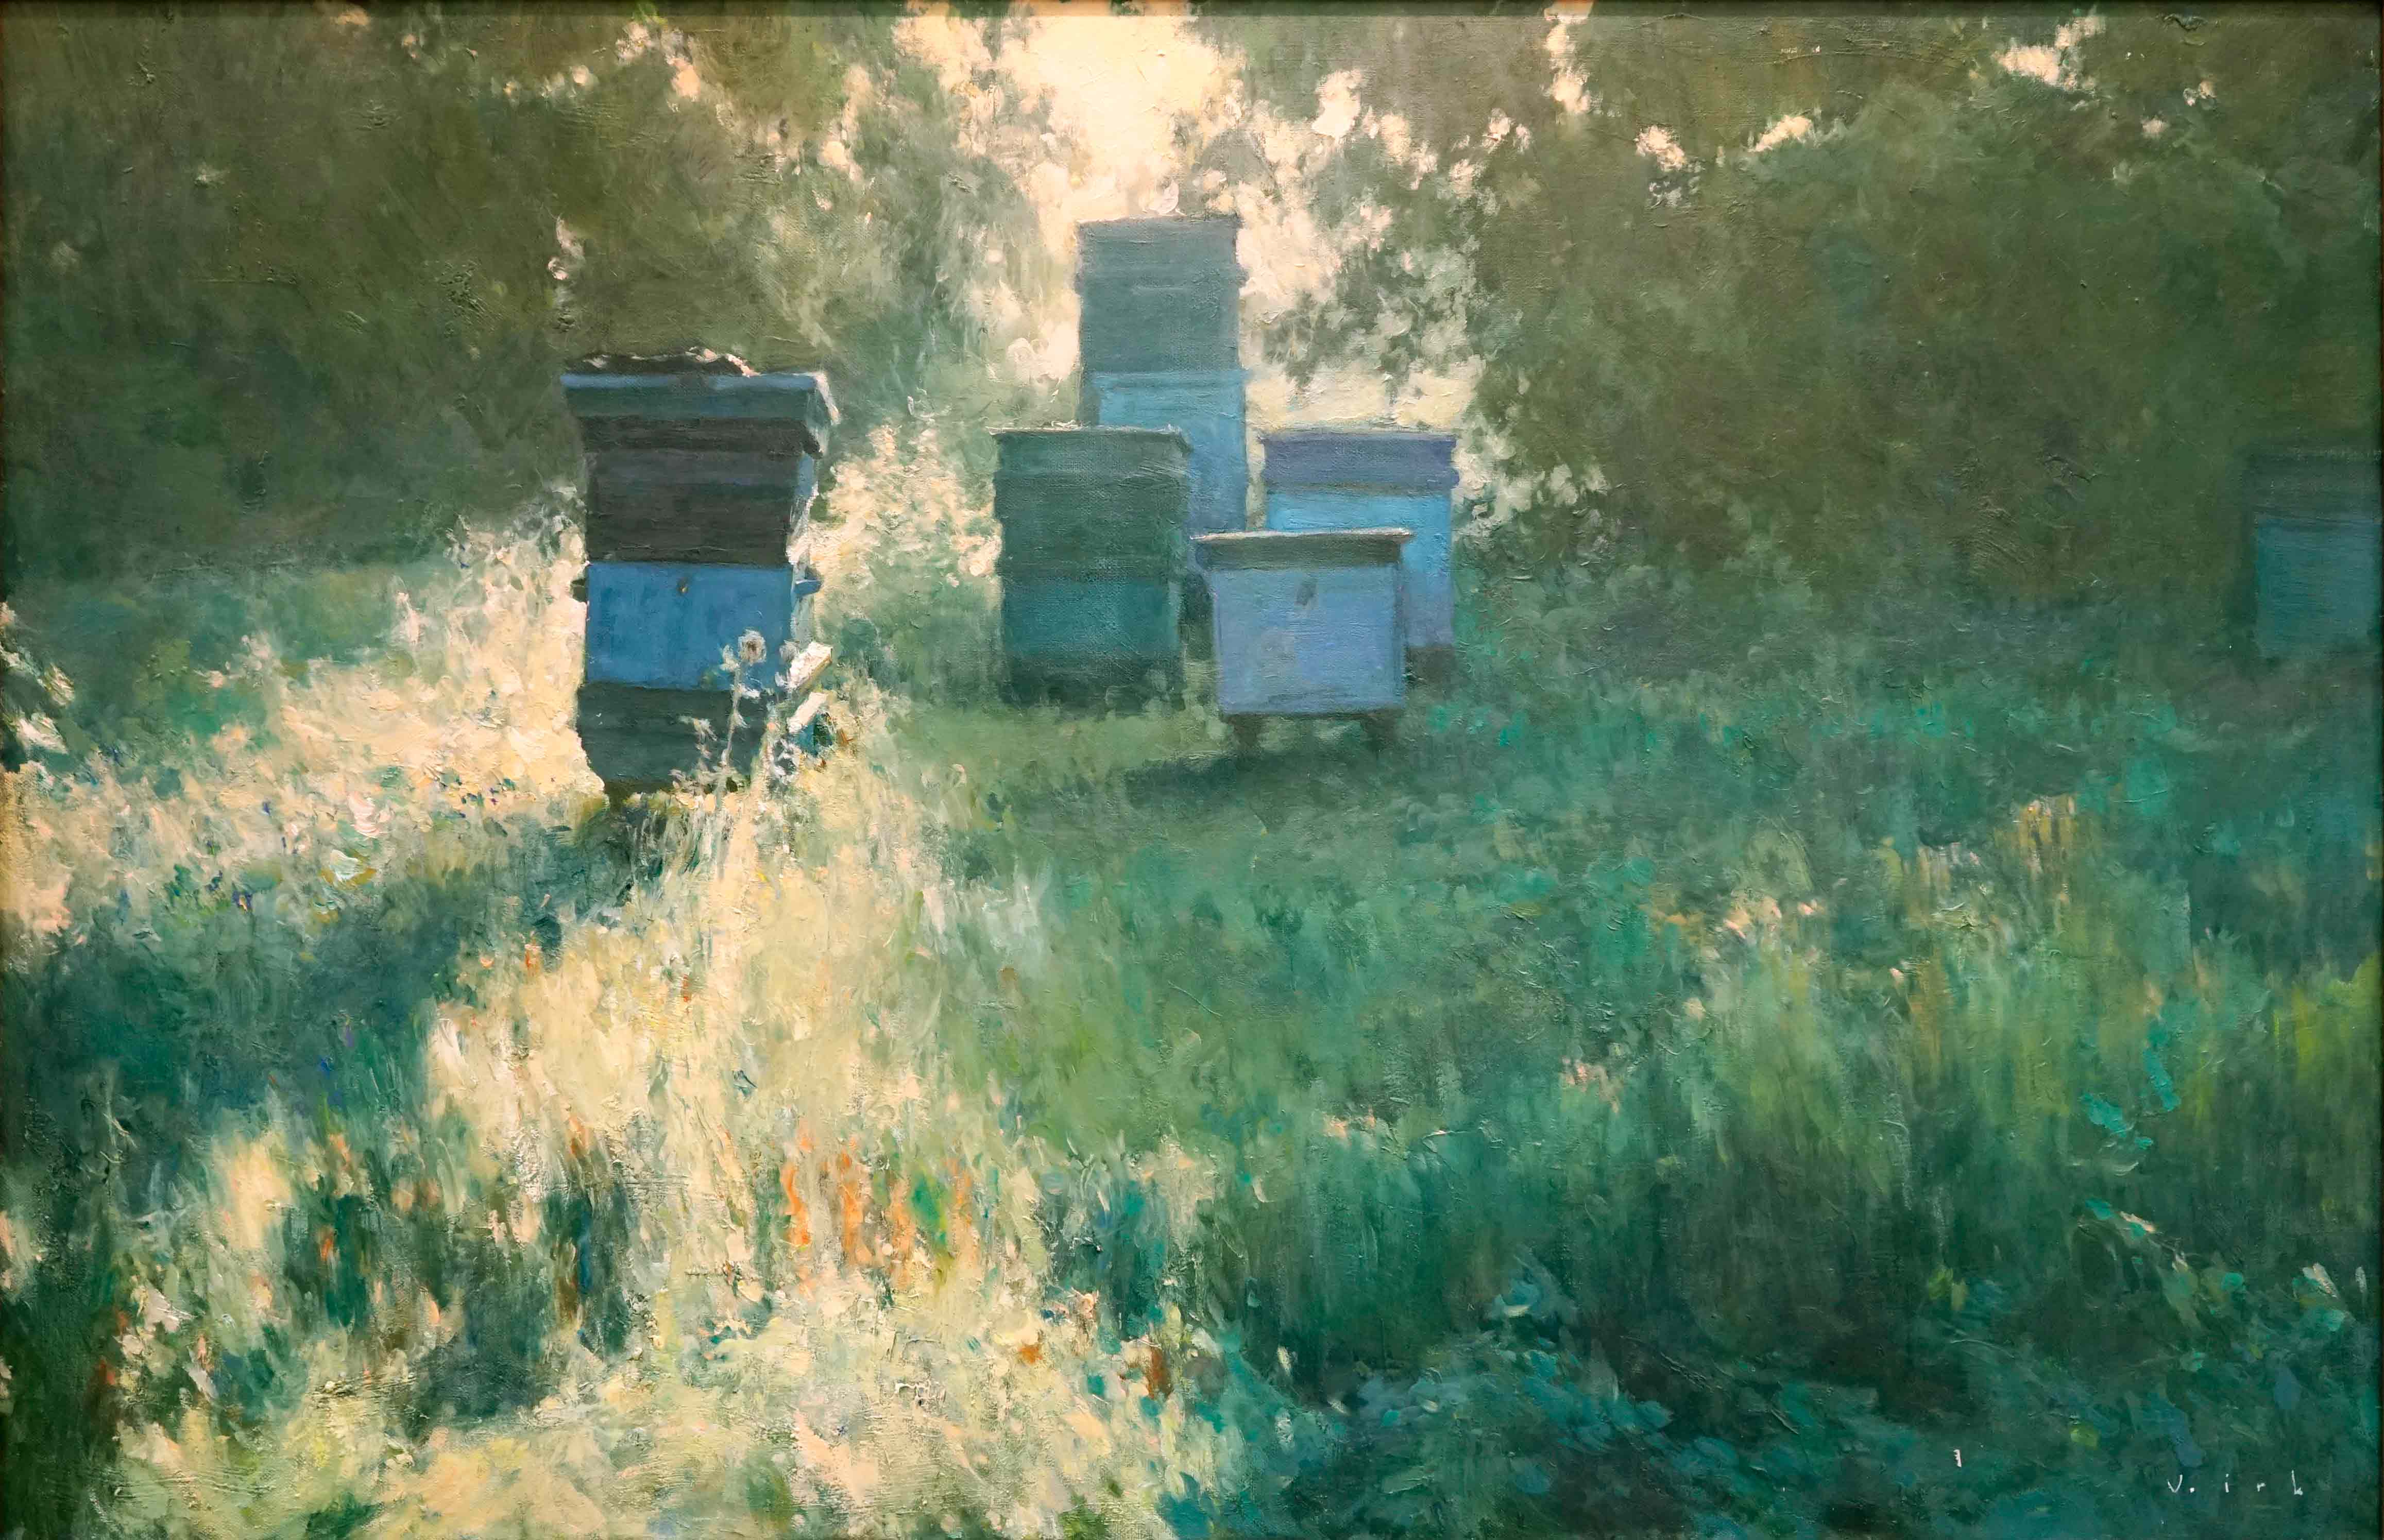 Apiary - 1, Vladimir Kirillov, Buy the painting Oil